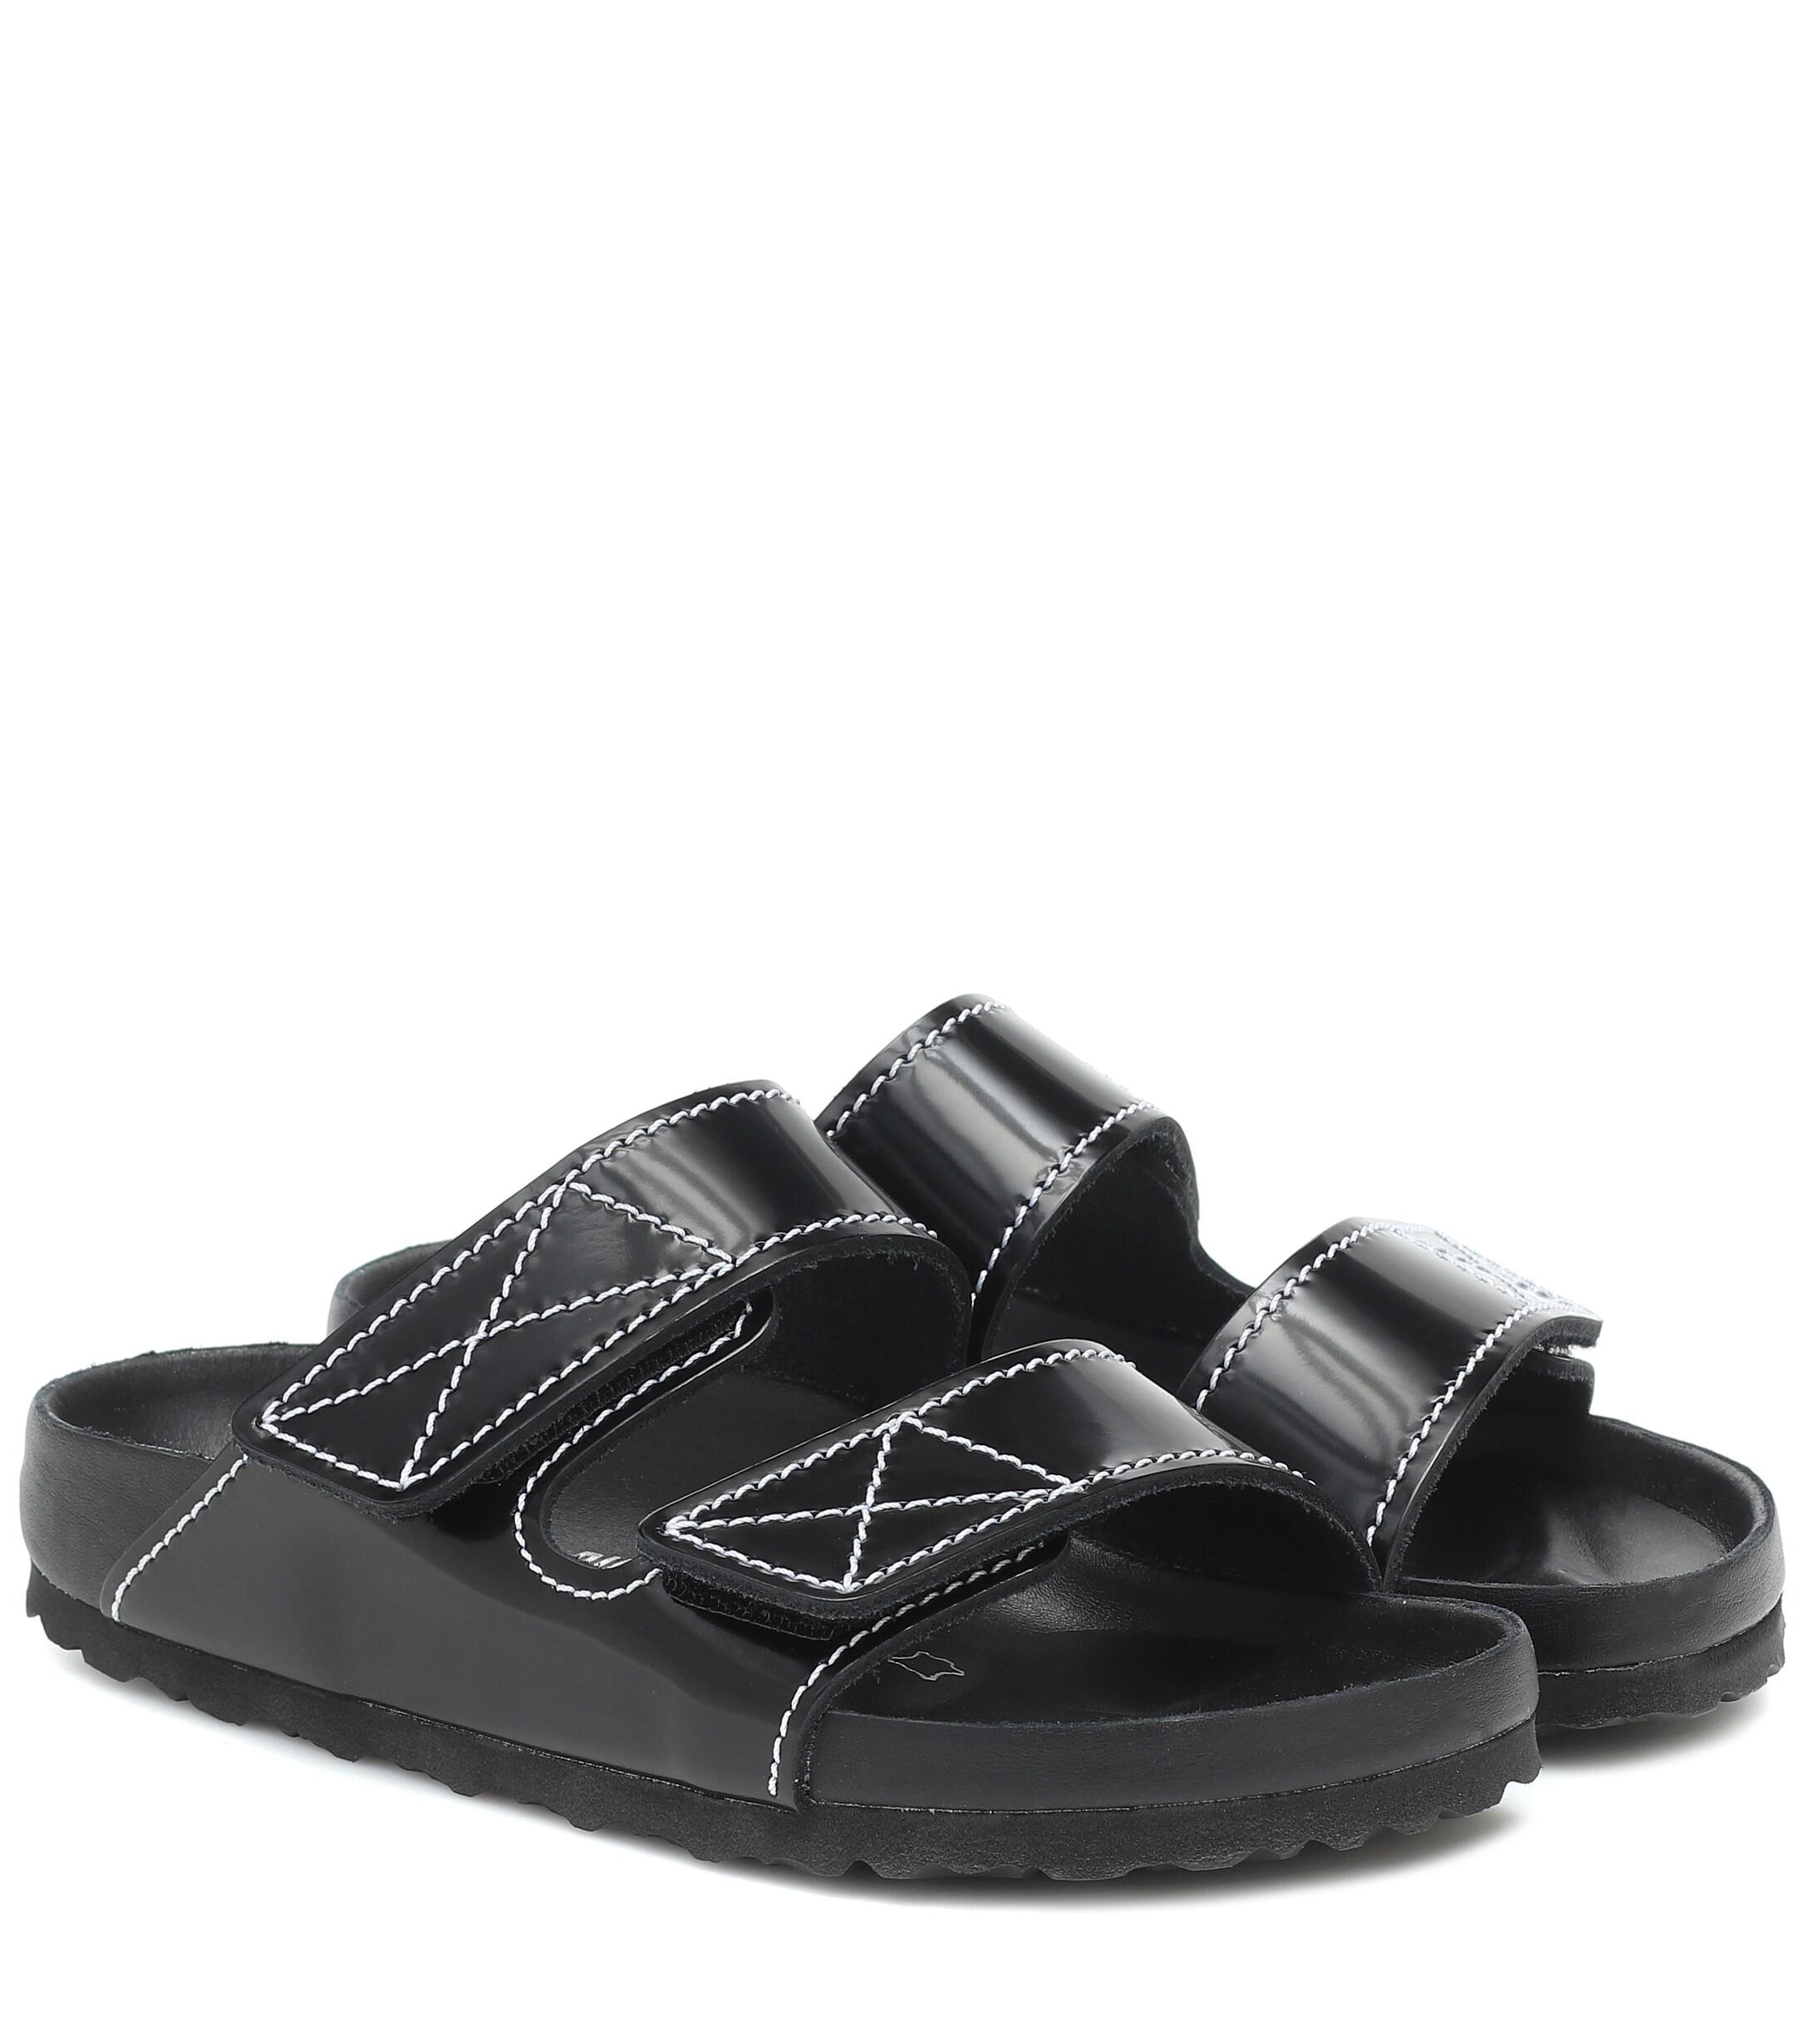 Proenza Schouler X Birkenstock Arizona Leather Sandals in Black - Lyst